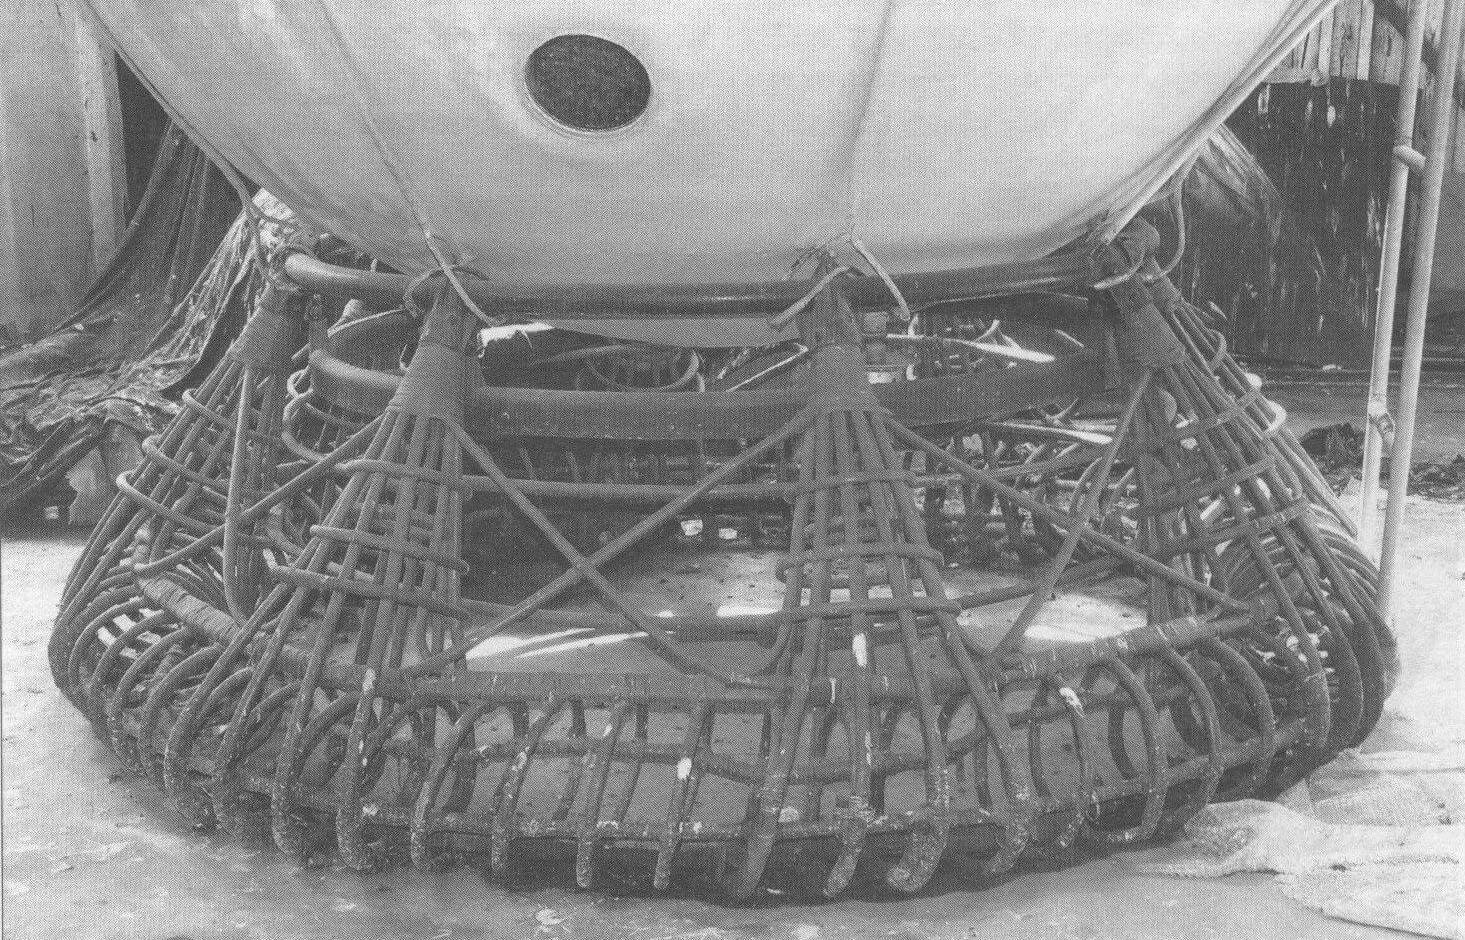 Плетеный амортизатор гондолы стратостата «СССР» был аналогичен БОК-9